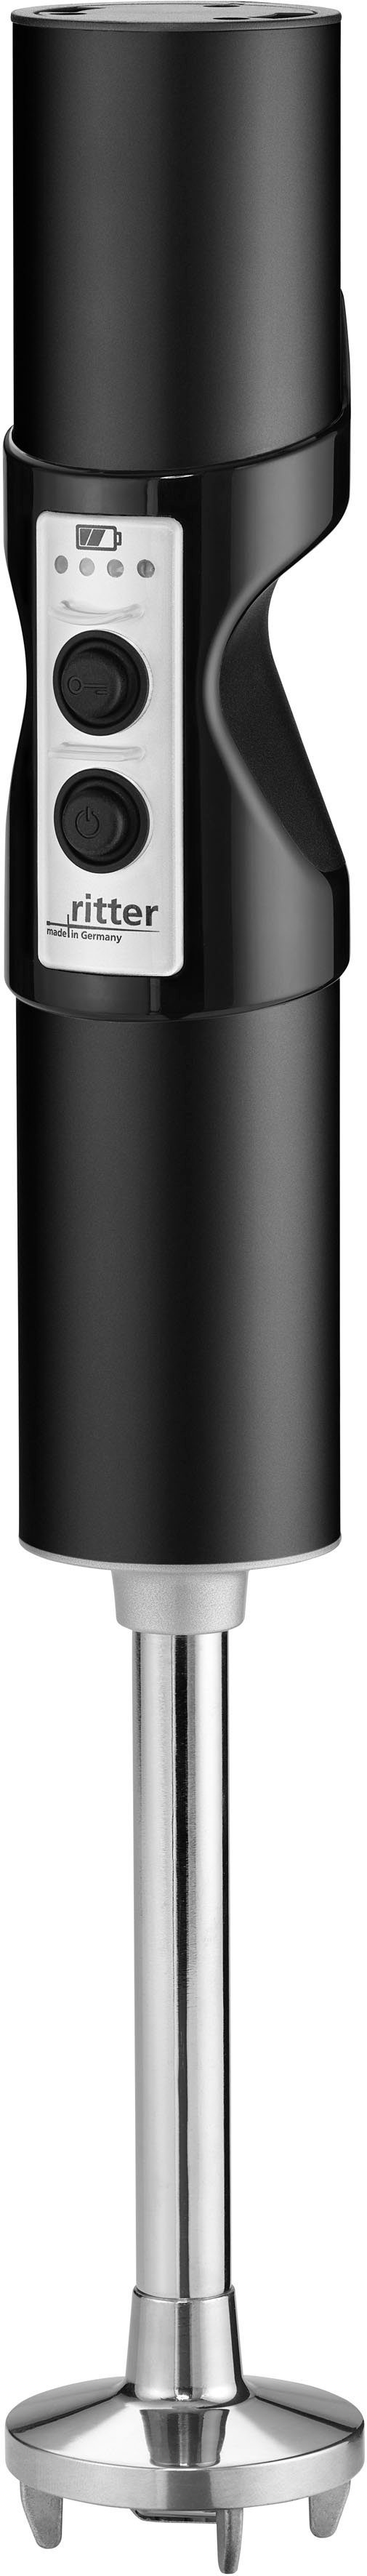 ritter Akku-Stabmixer stilo 7 Plus Trendfarbe Schwarz, 120 W, mit 4 Aufsätzen aus Edelstahl sowie 2 Mixbechern | Stabmixer